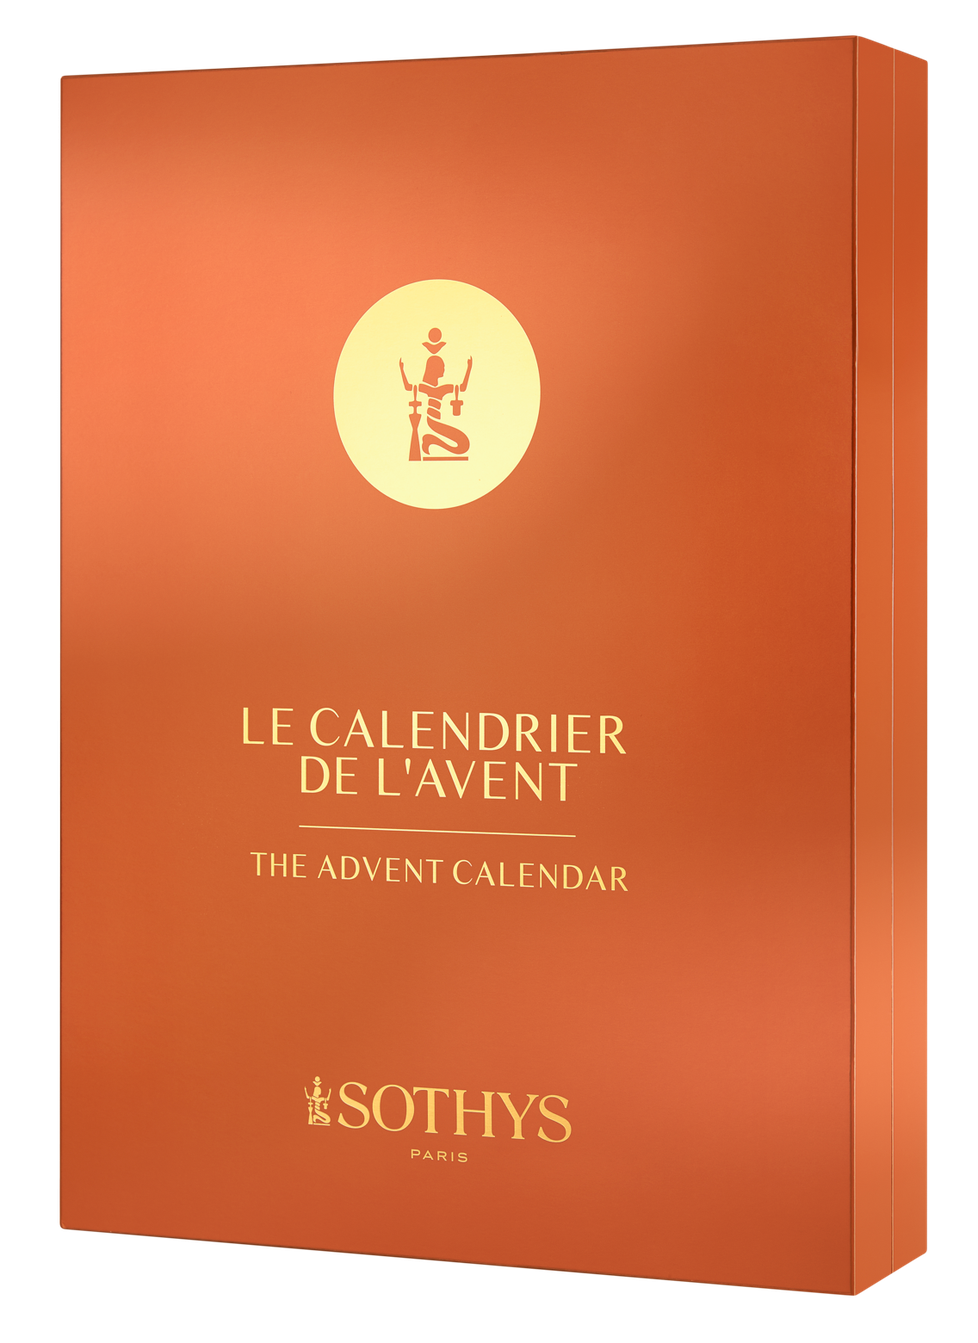 Adventní kalendář Sothys Paris, 3885 Kč, koupíte ve vybraných salonech